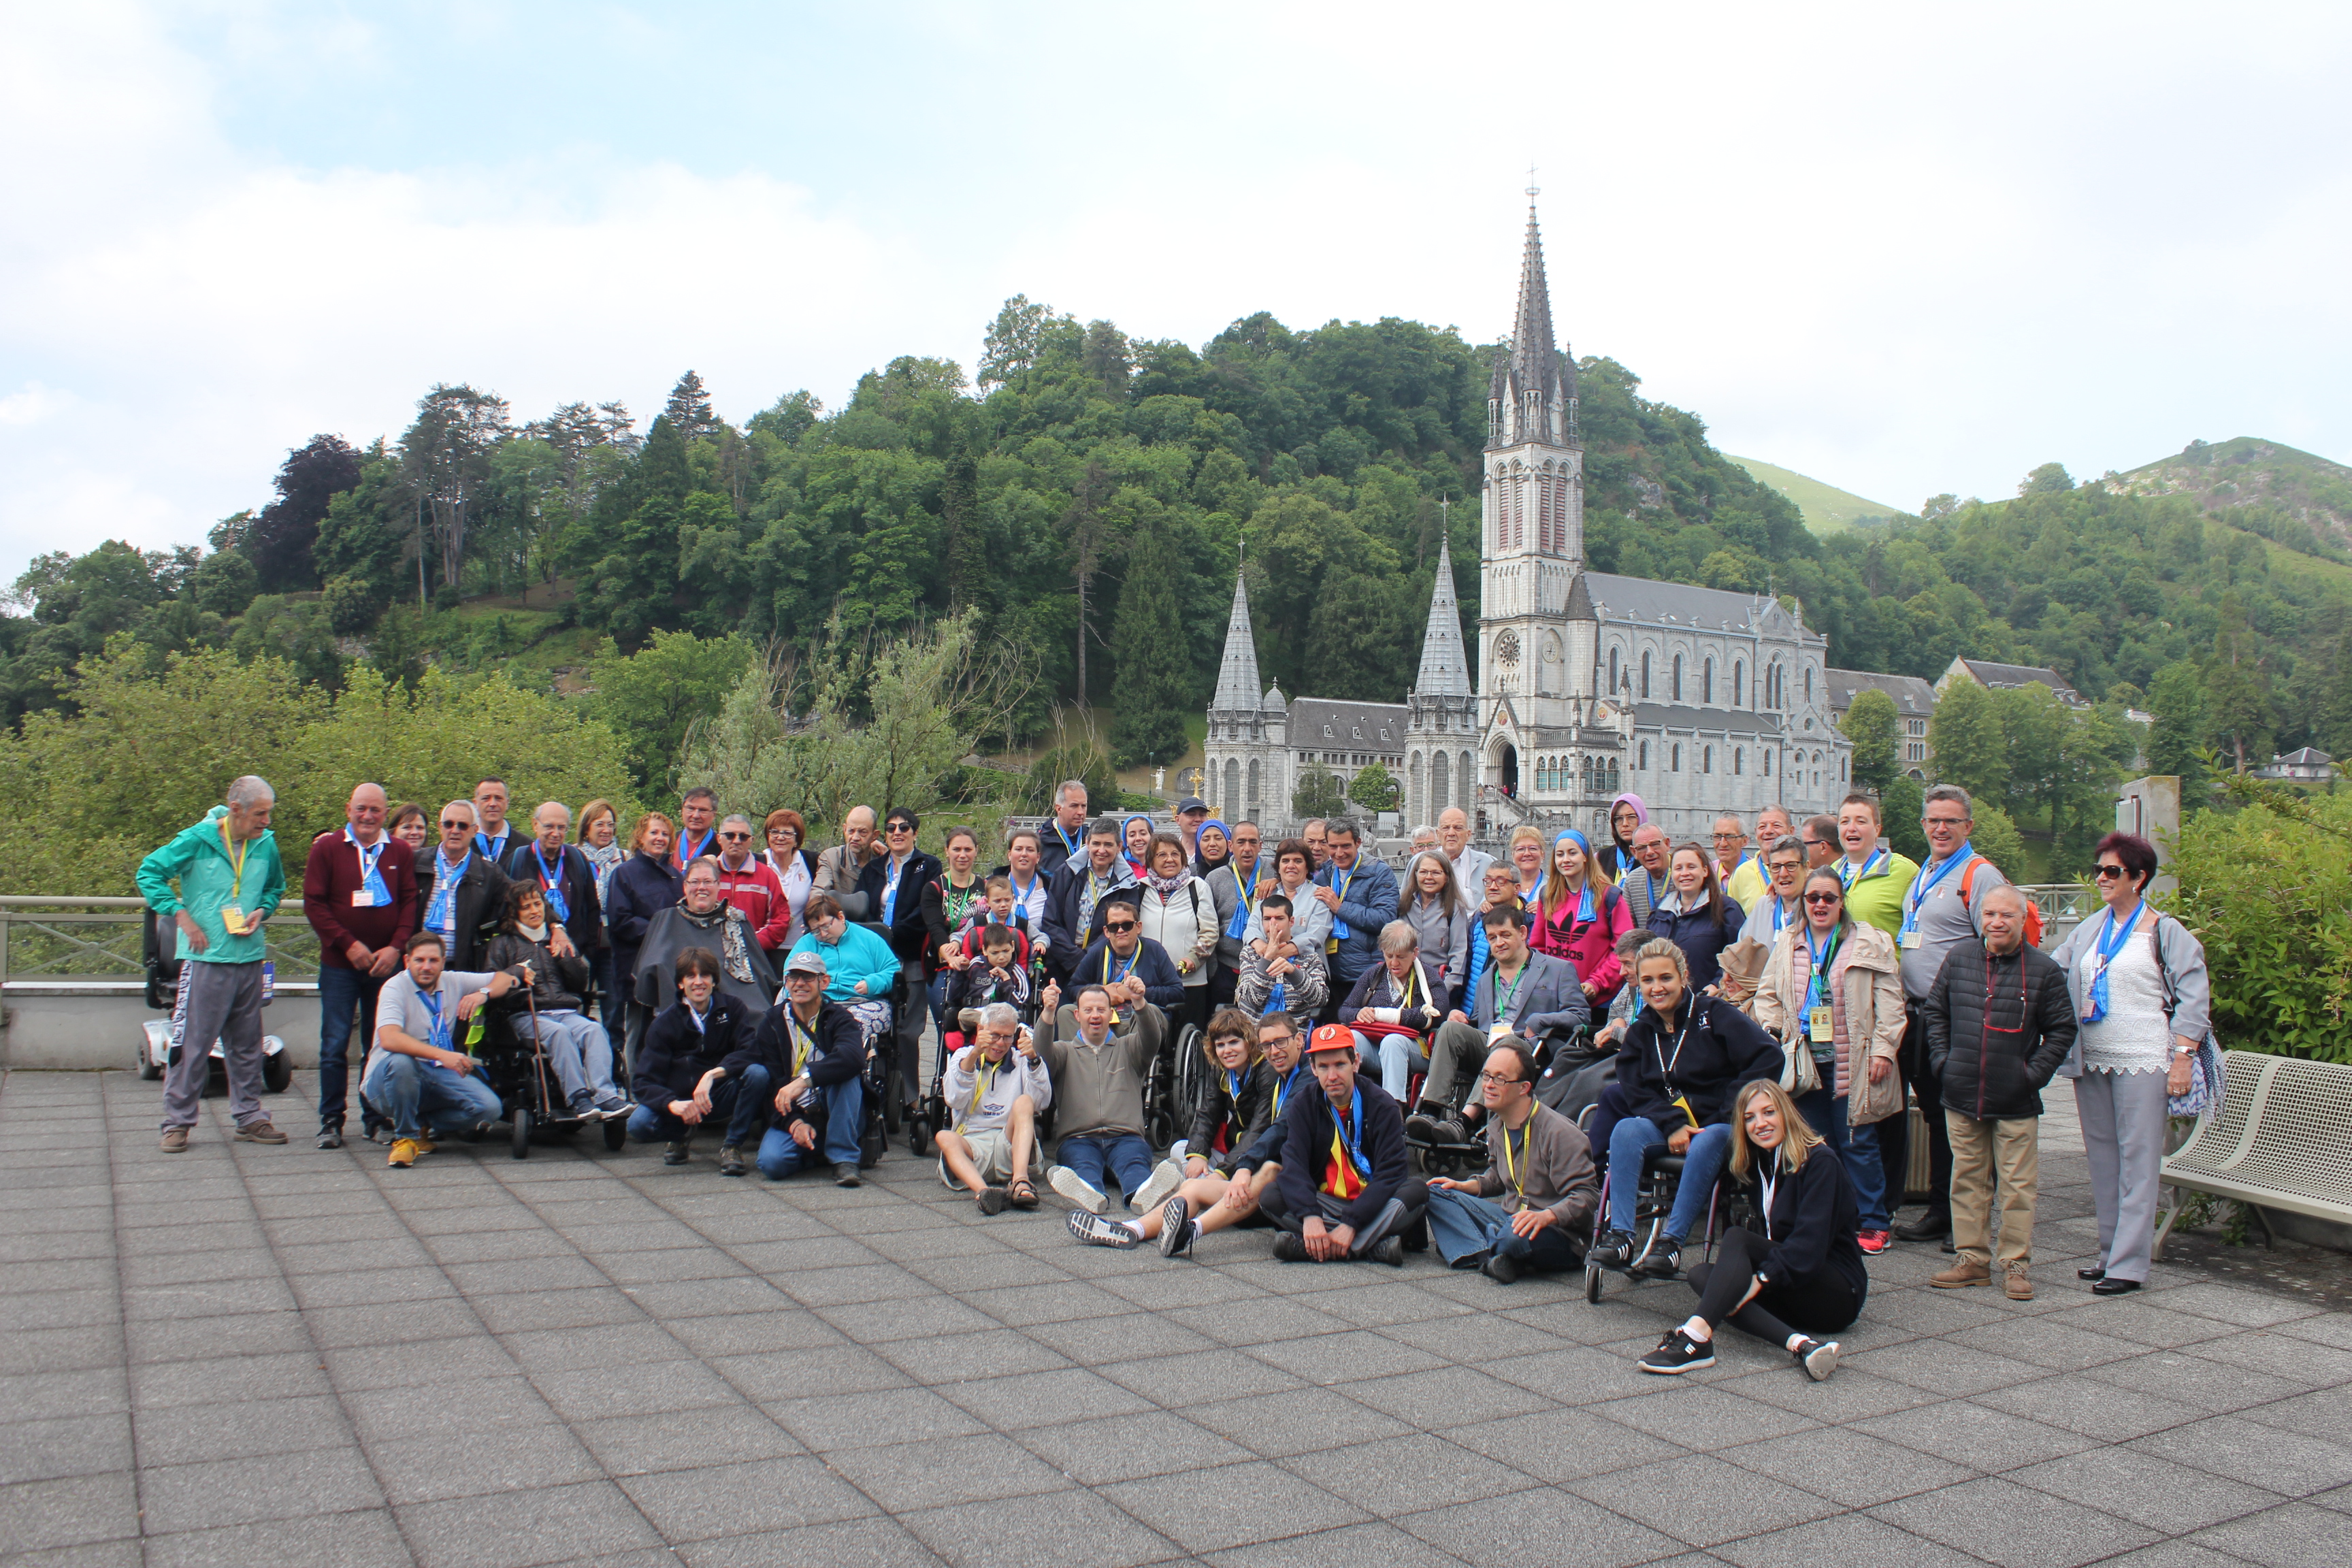 Els participants al pelegrnatge amb la basílica de Lourdes de fons